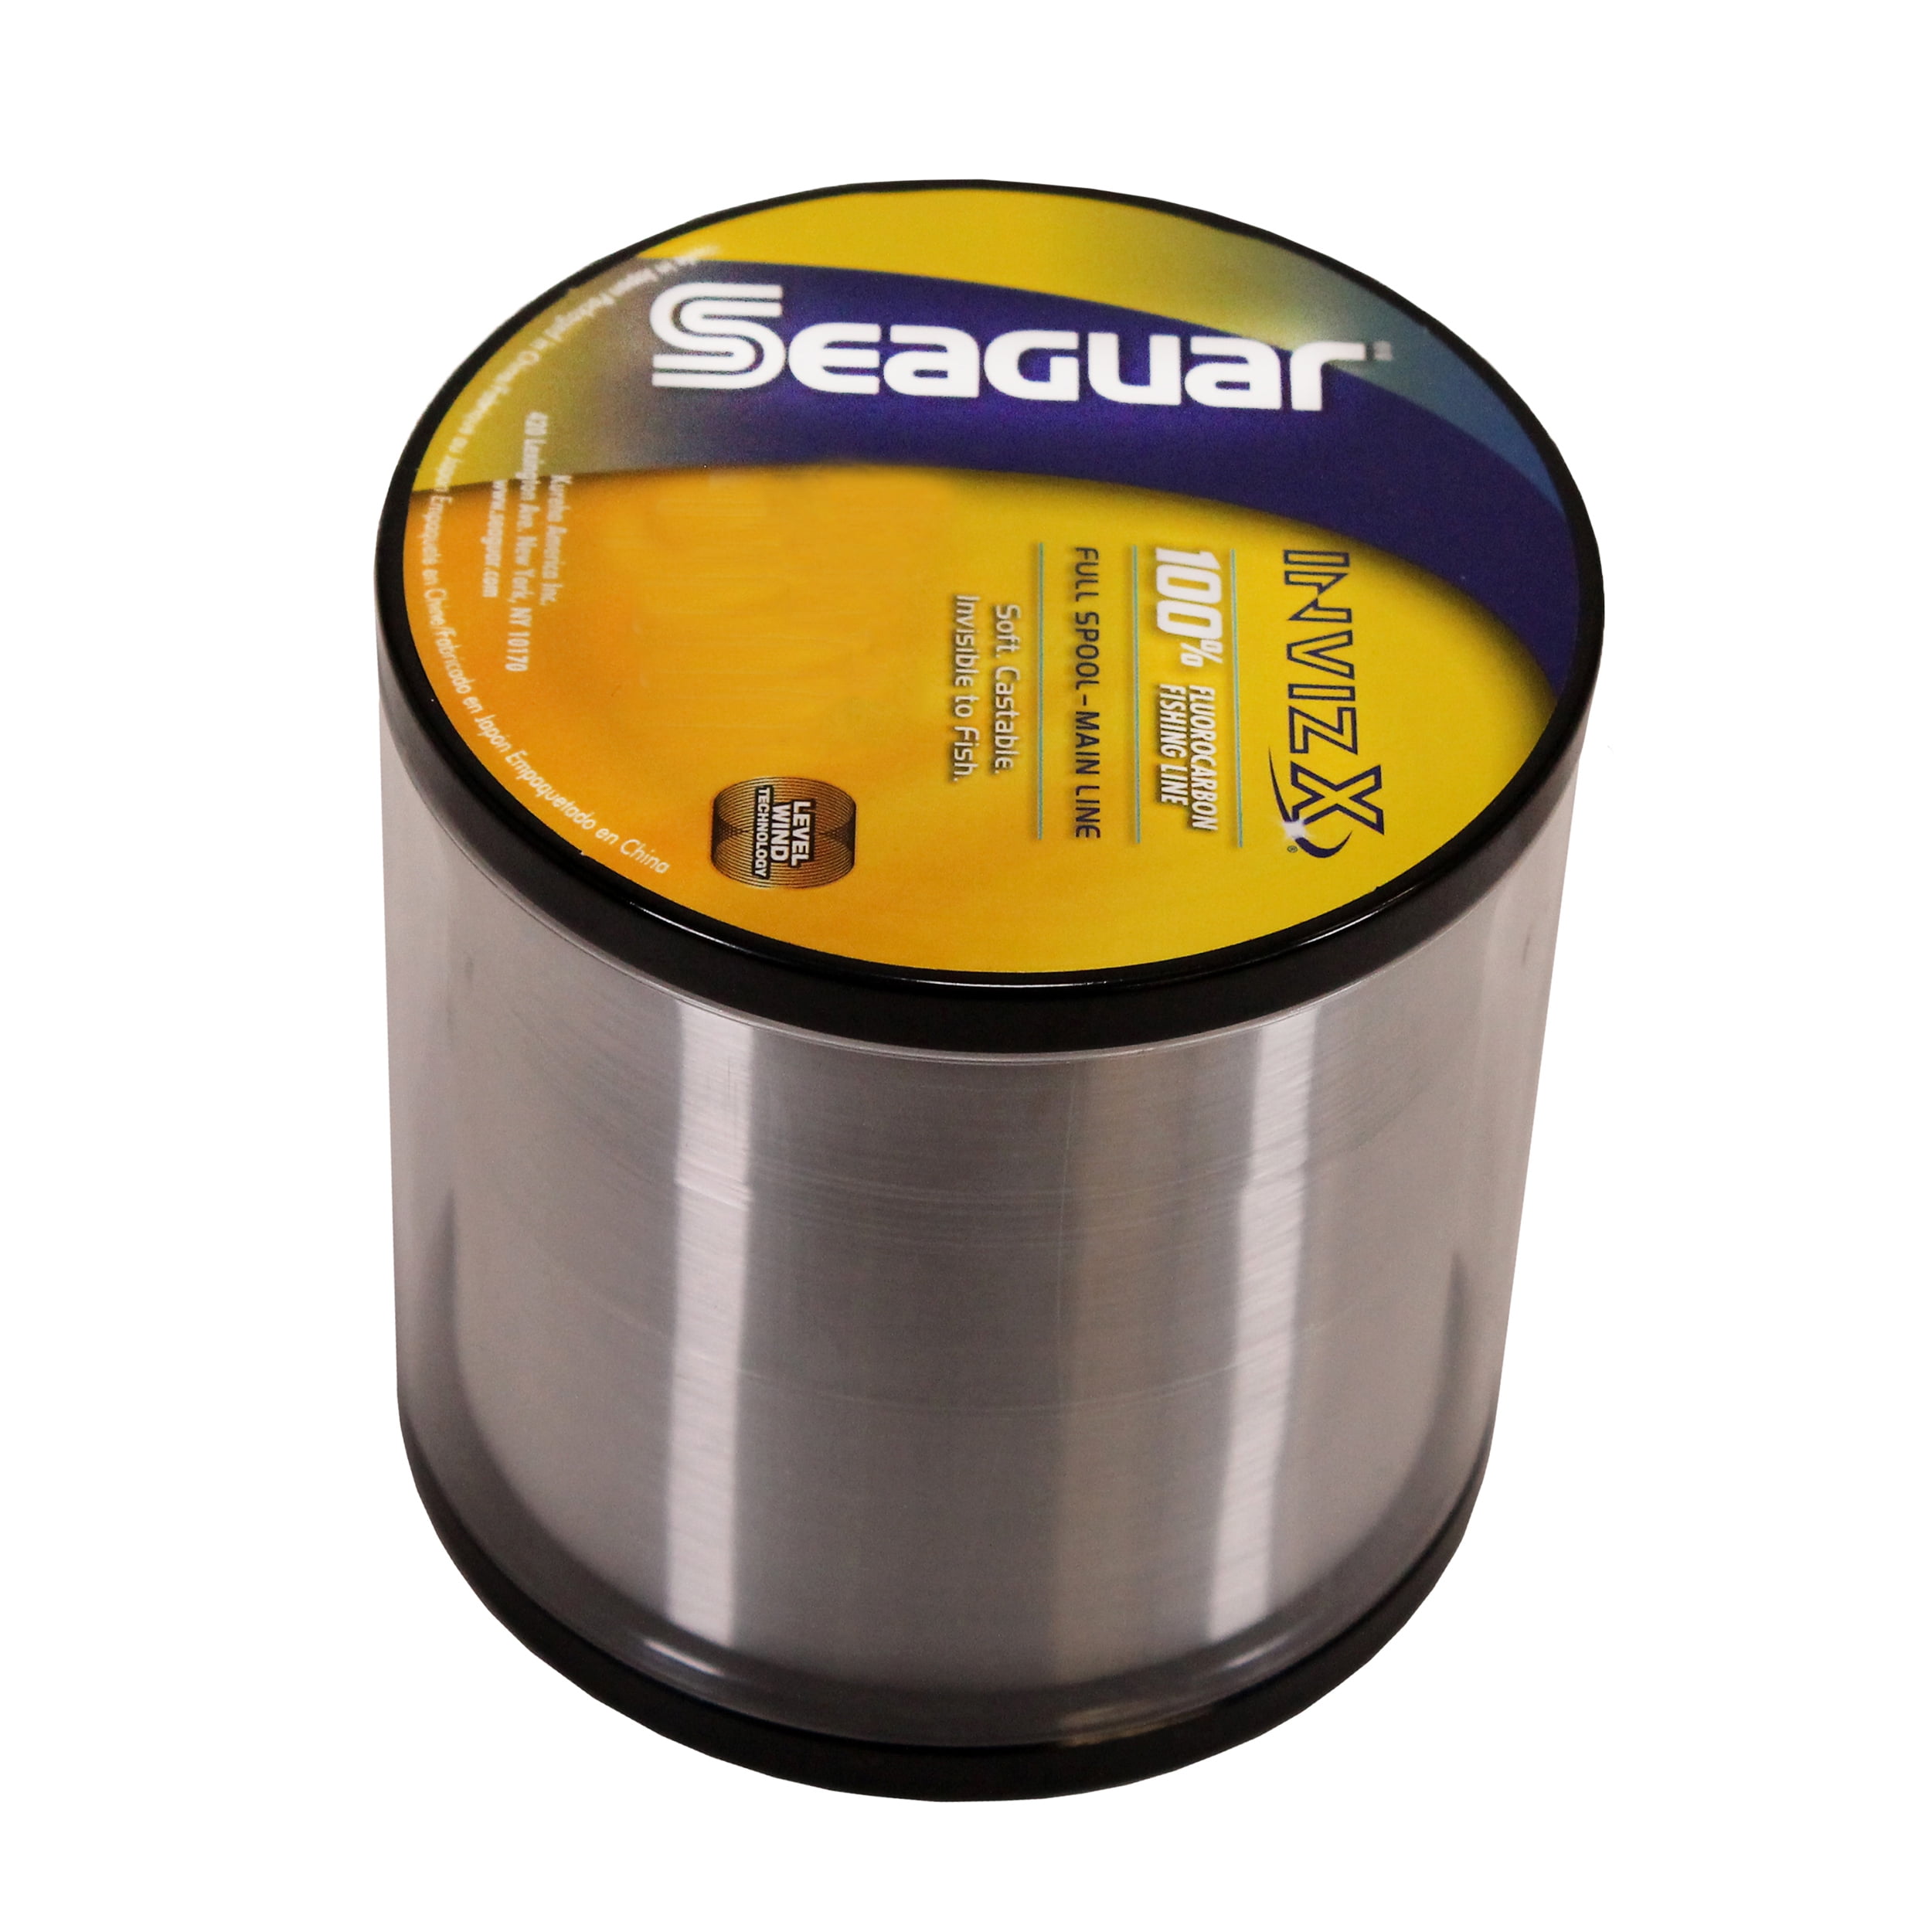 Seaguar Invizx 100% Fluorocarbon Fishing Line 12lbs, 1000yds Break